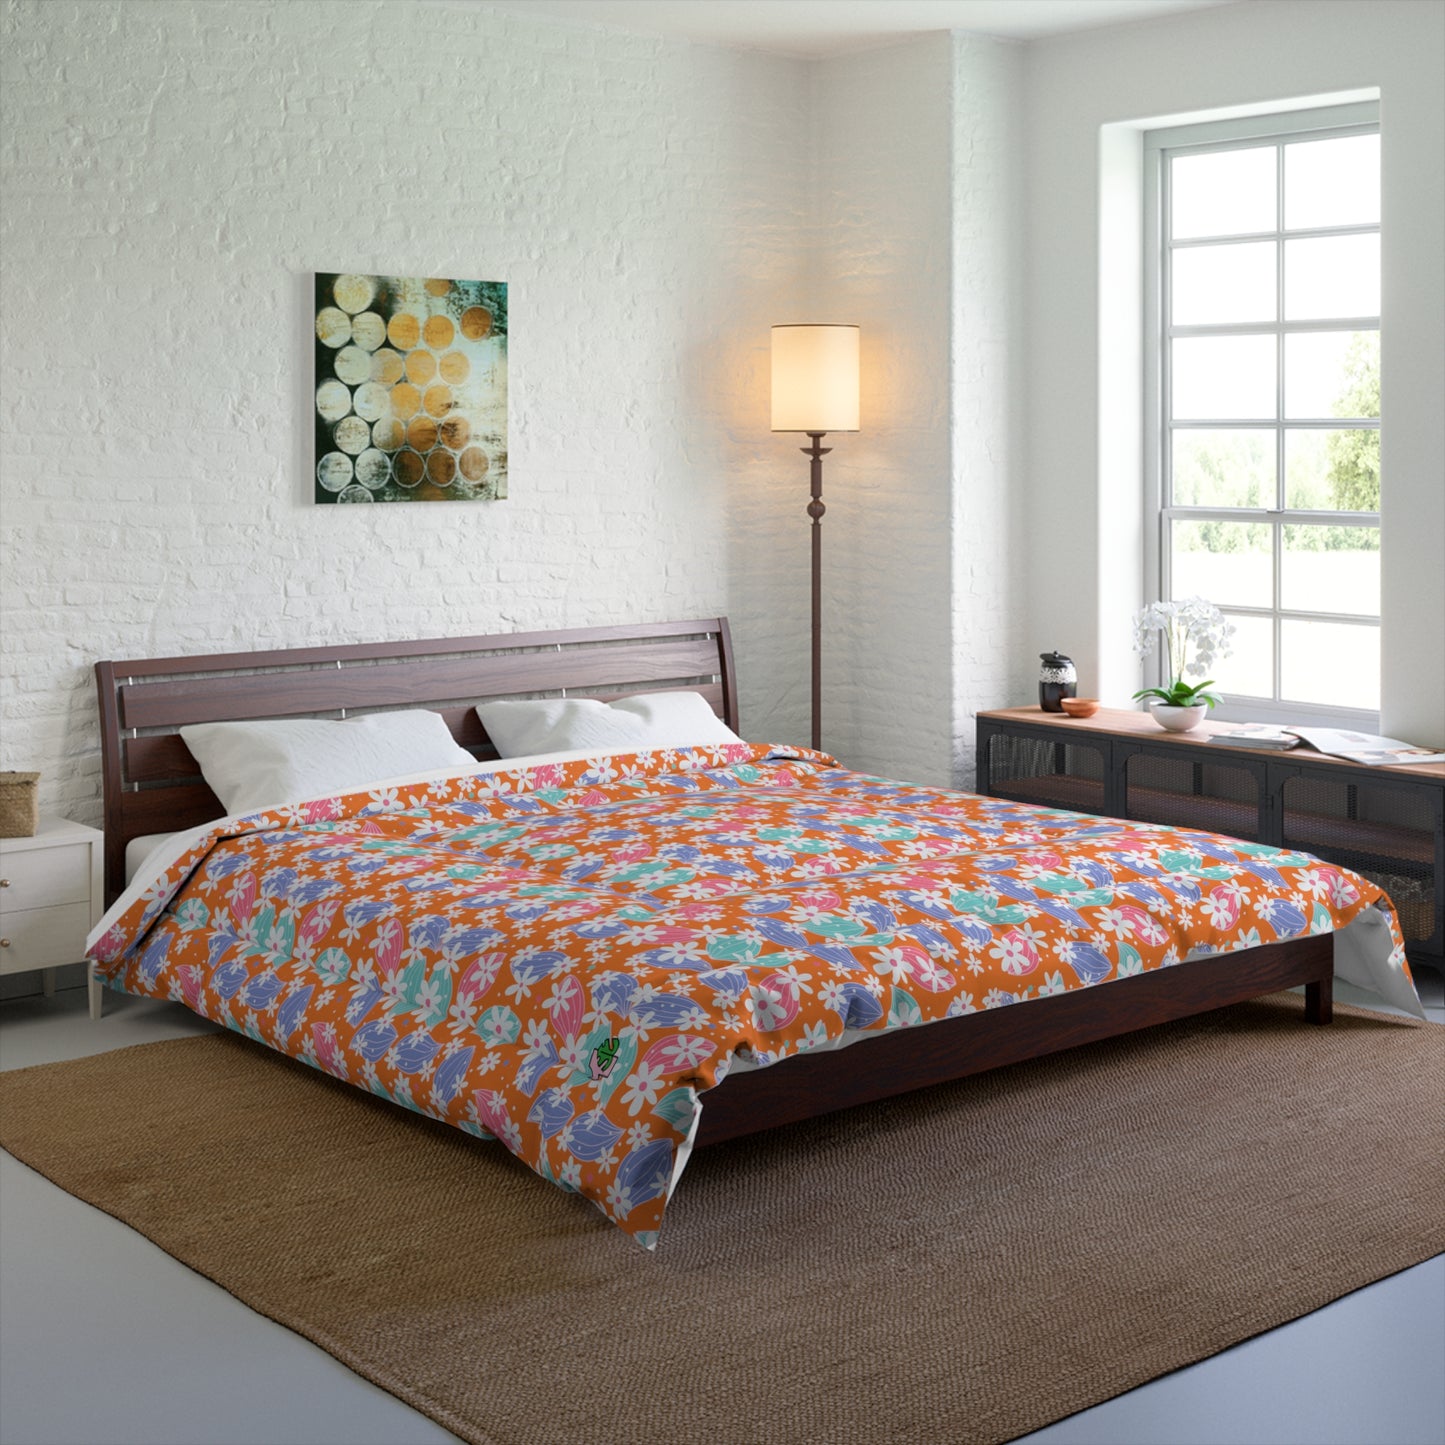 Floral Print Over Orange Comforter